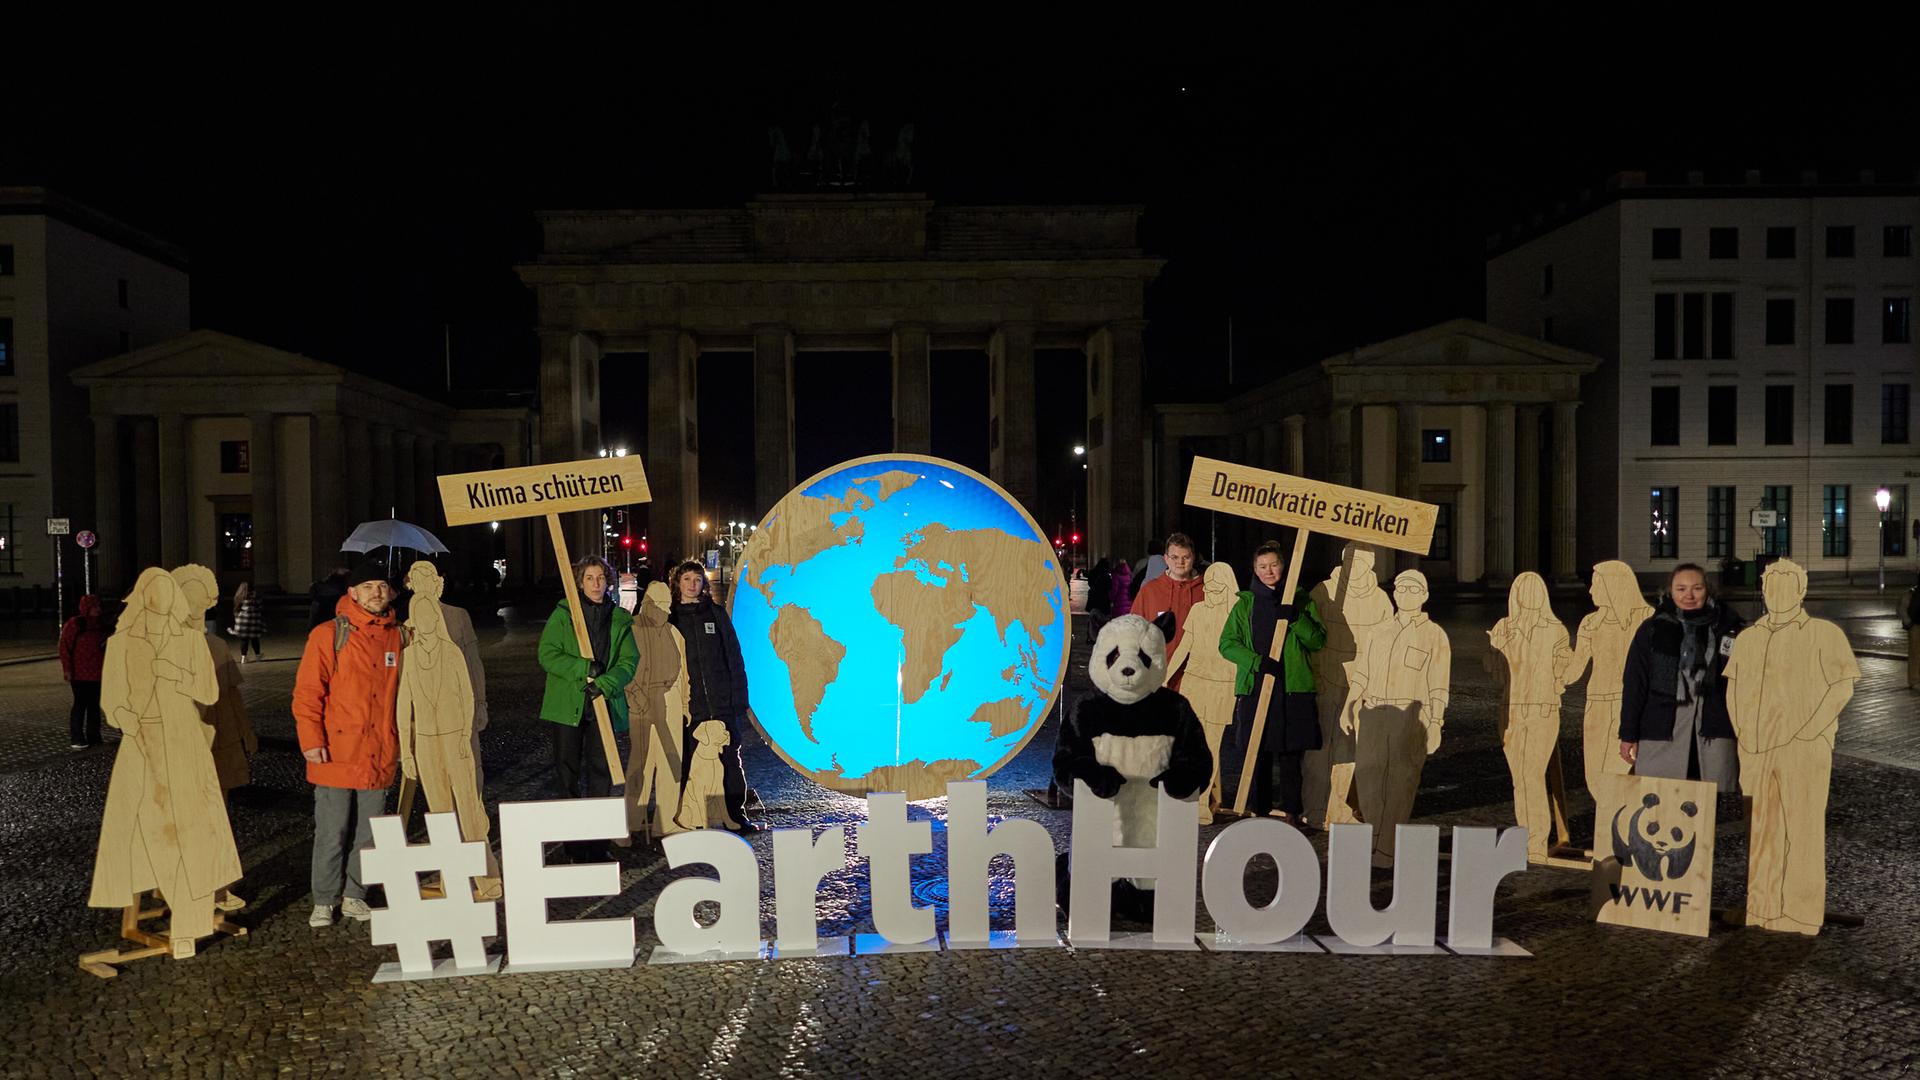 Im Hintergrund schemenhaft zu erkennen ist das Brandenburger Tor. Davor stehen Aktivisten mit Schildern, auf denen "Klima schützen" steht und "Demokratie stärken". Vor ihnen bilden aufgestellte Buchstaben den Begriff "Earth Hour".